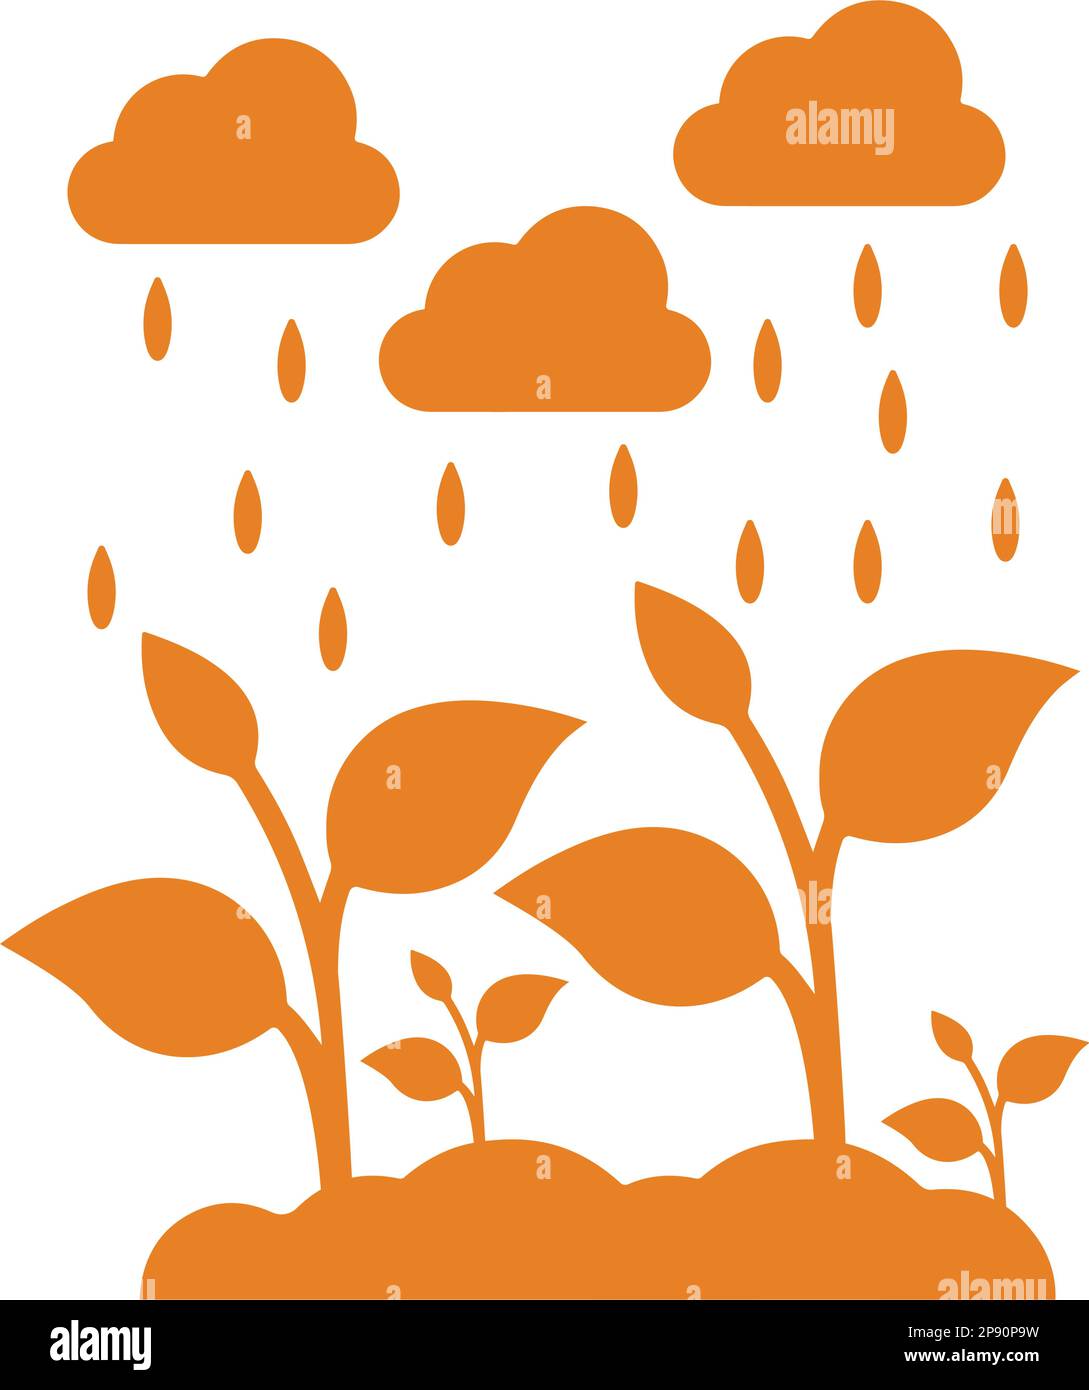 Icône nuage, arbre, pluie. Une icône magnifique et méticuleuse. Vecteur bien organisé et modifiable pour toutes les utilisations. Illustration de Vecteur